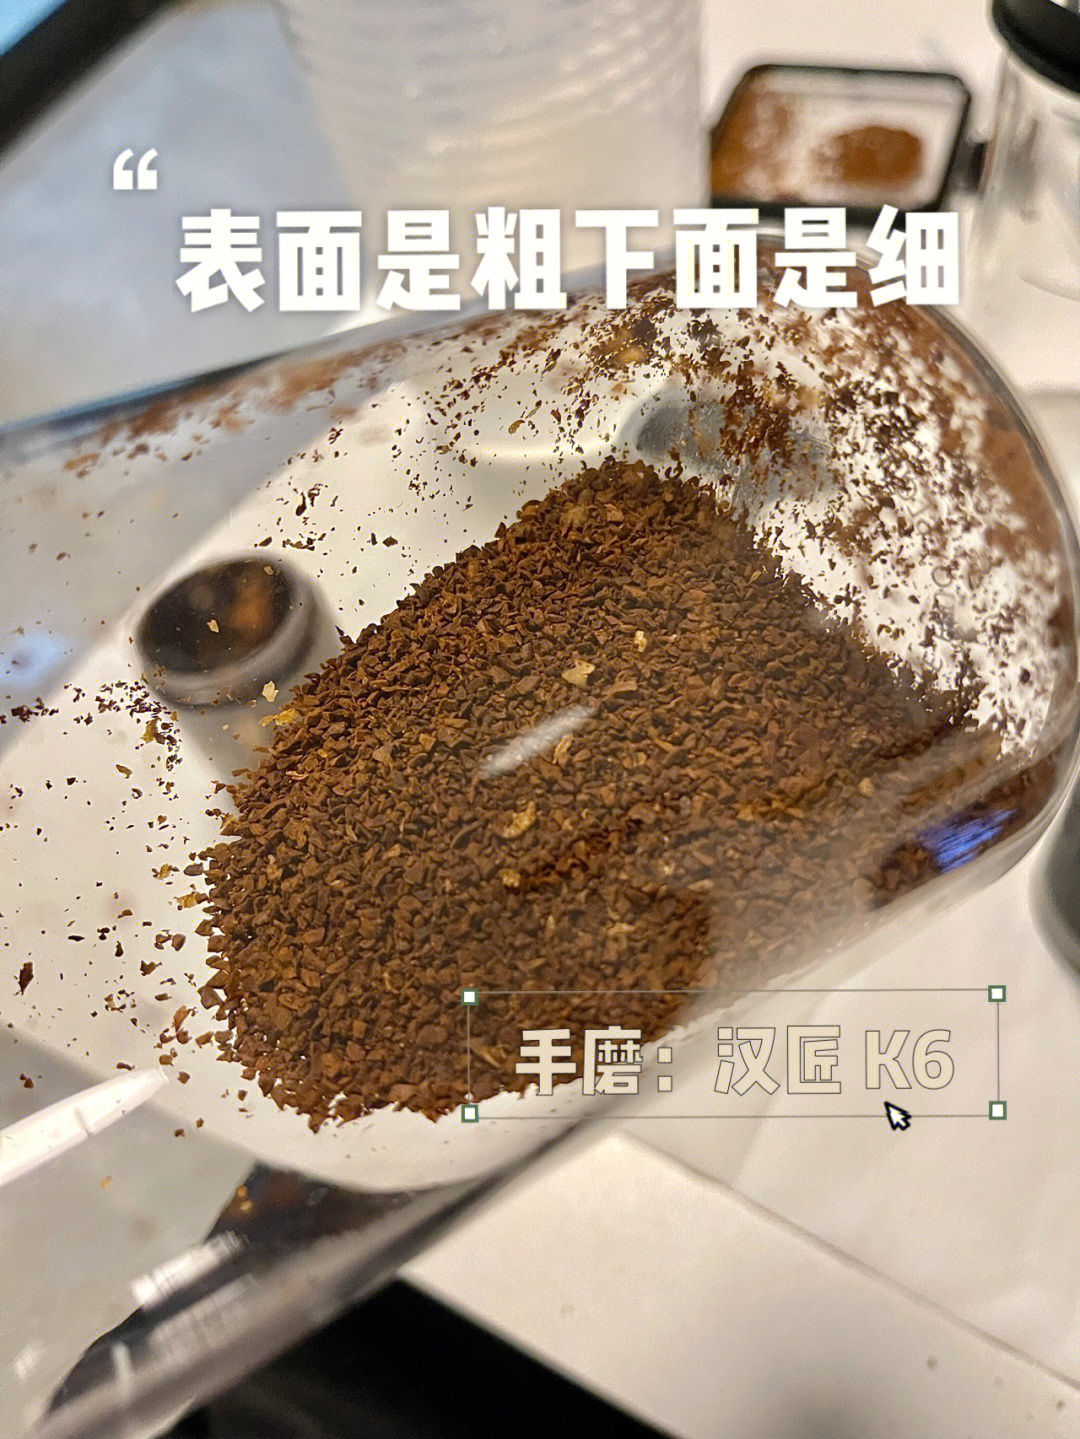 磨咖啡粉的粗细图解图片